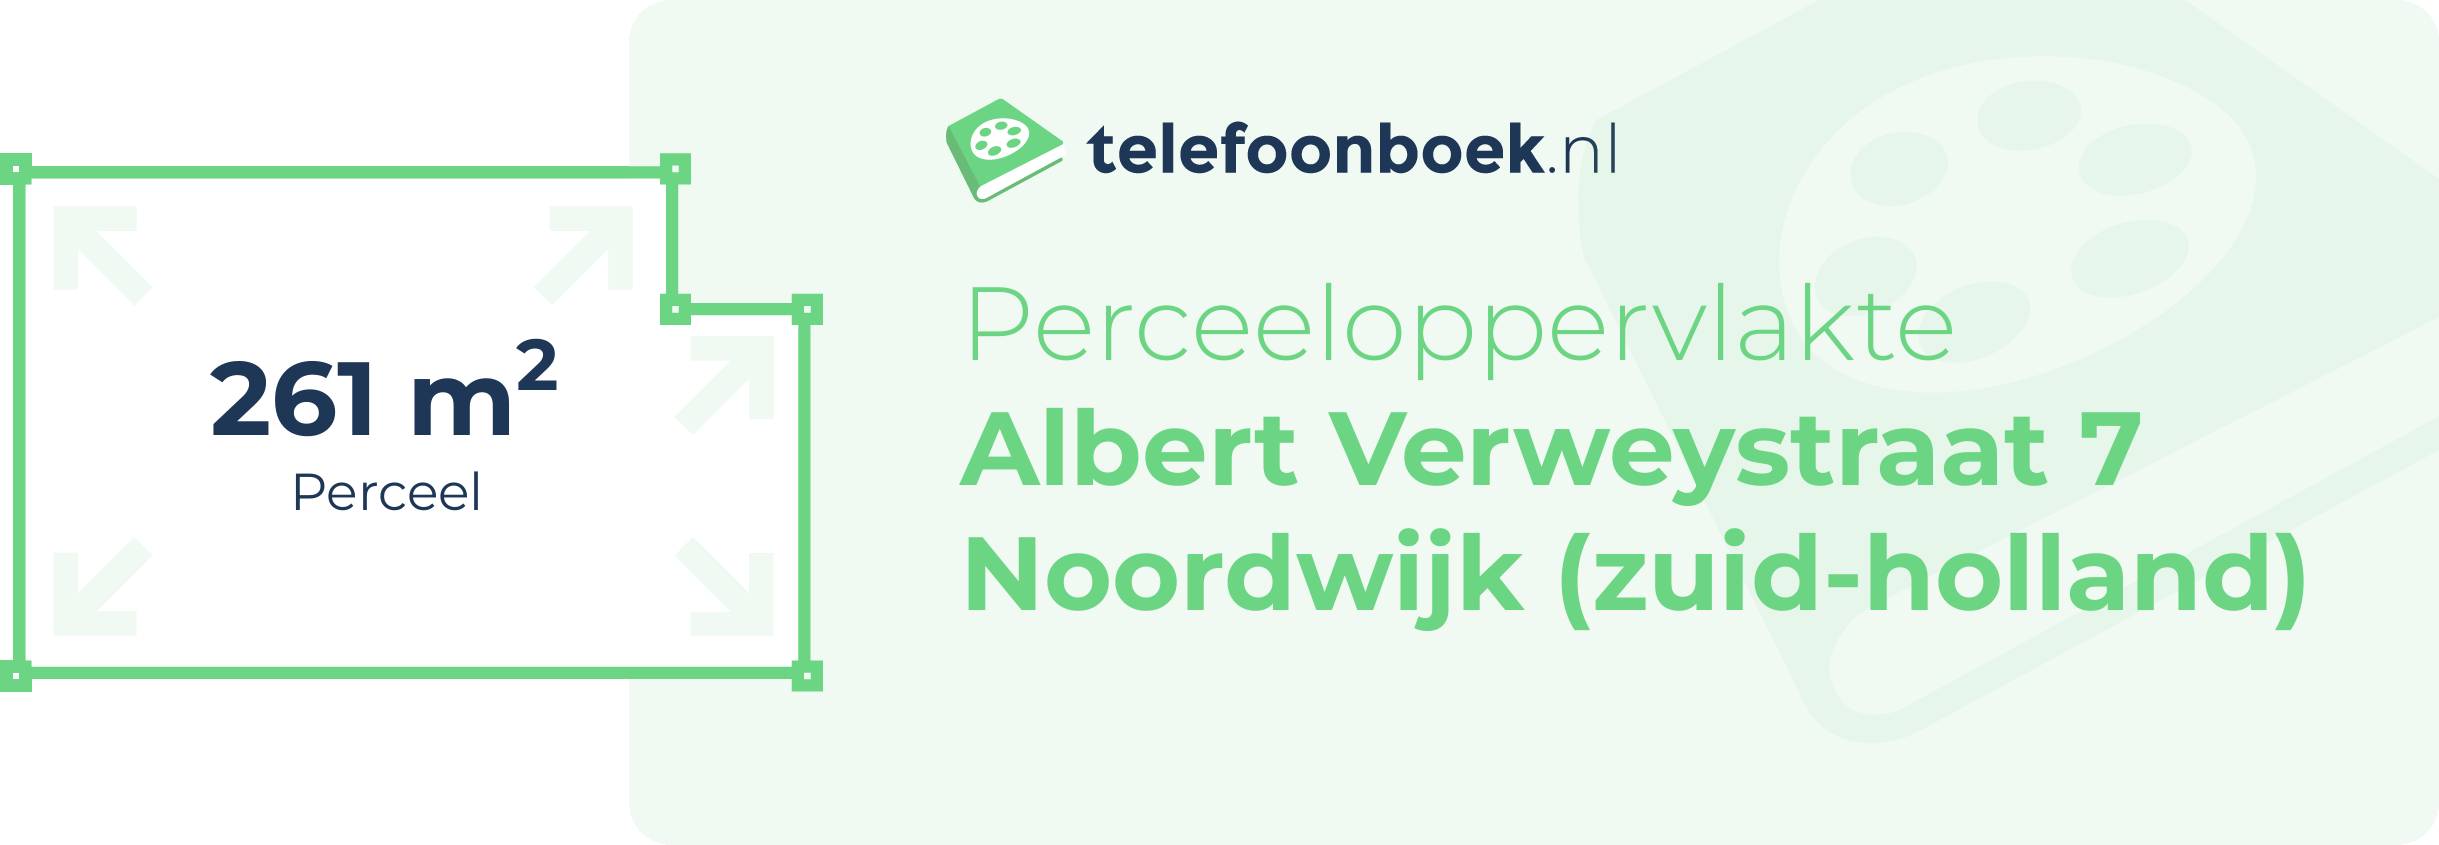 Perceeloppervlakte Albert Verweystraat 7 Noordwijk (Zuid-Holland)